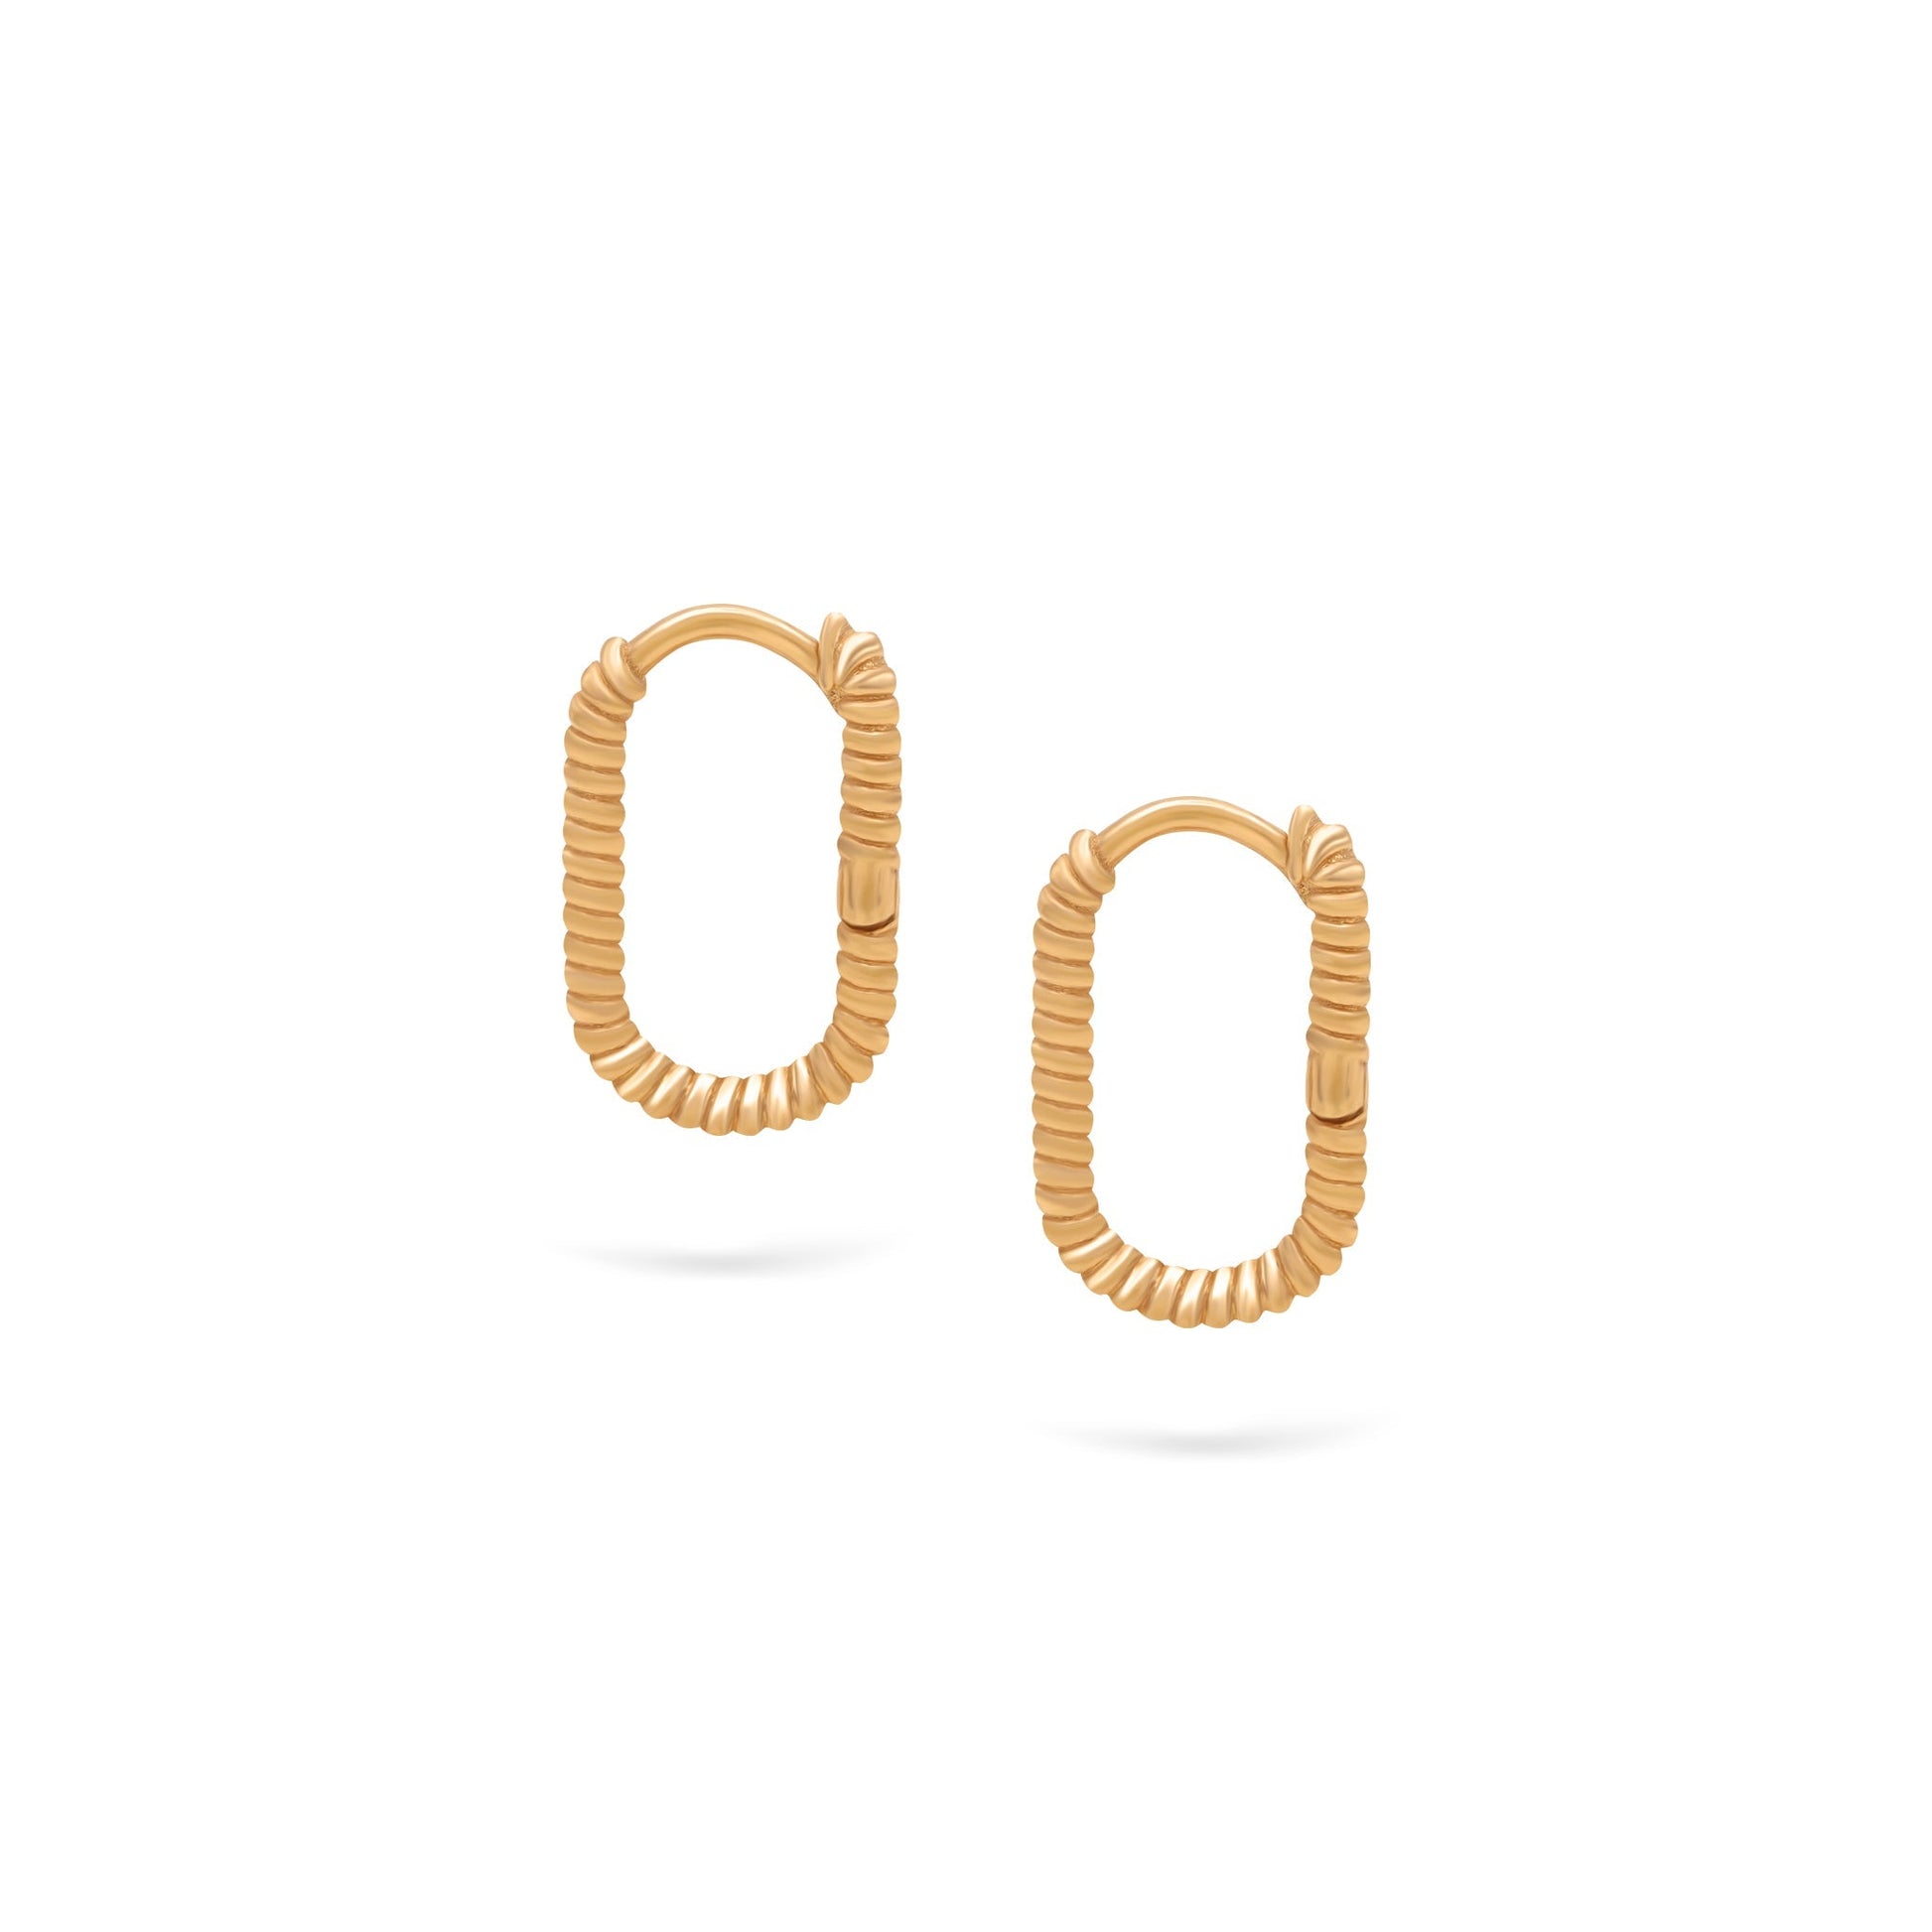 Jewelry Twist Hoops | Small Gold Earrings | 14K - Yellow / Pair - Diamond earrings Zengoda Shop online from